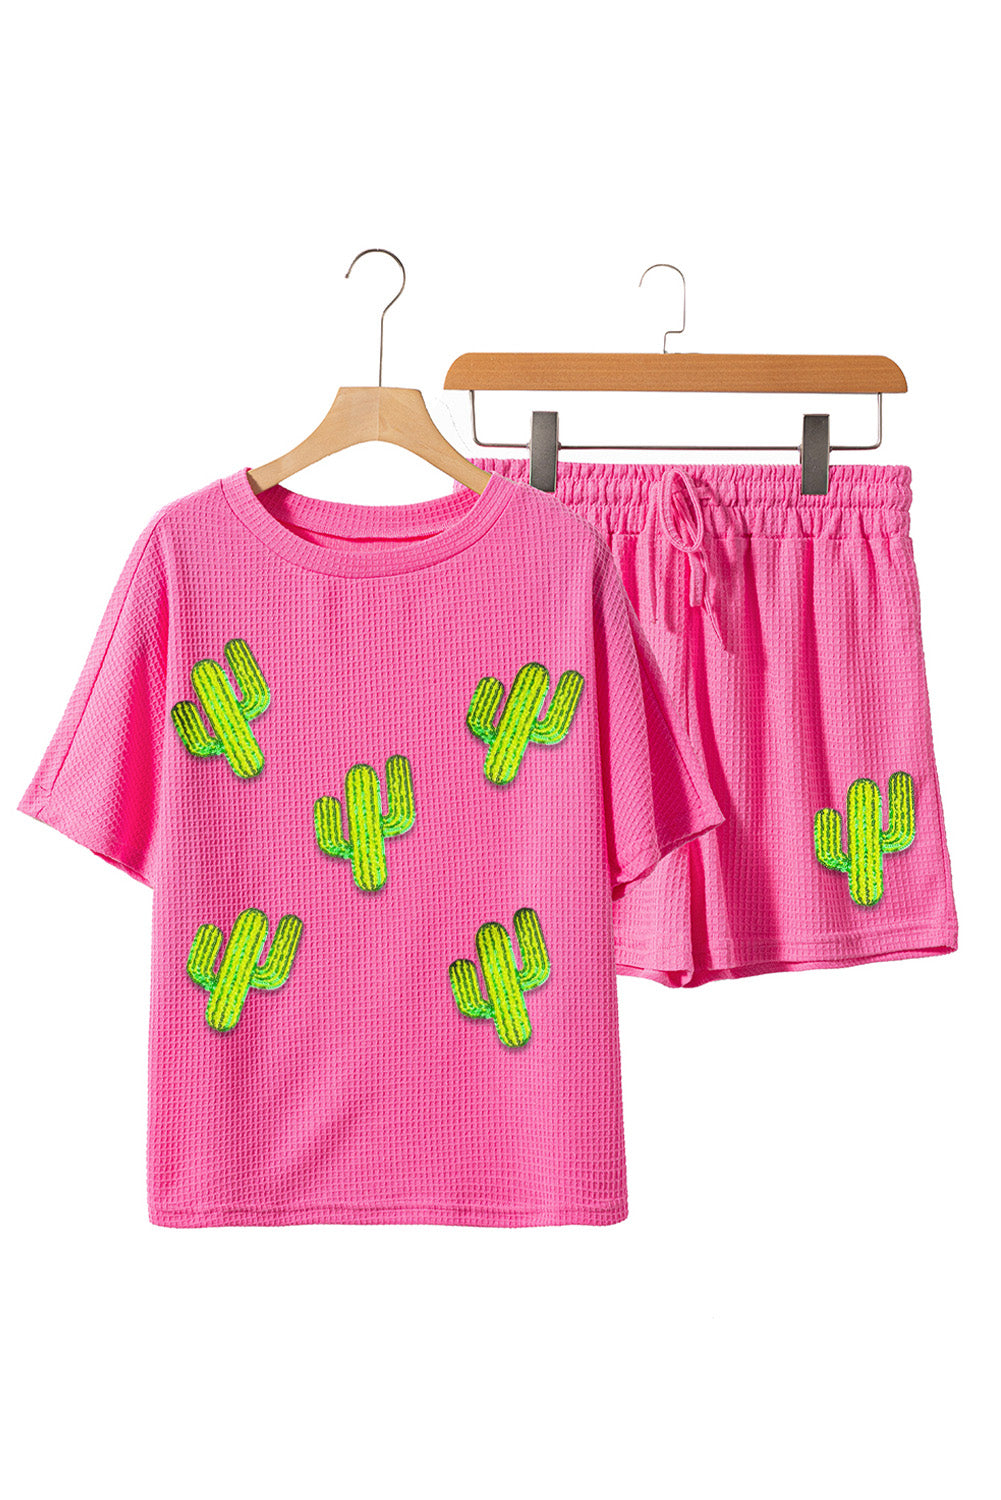 Prickly “Pear” Shorts Set